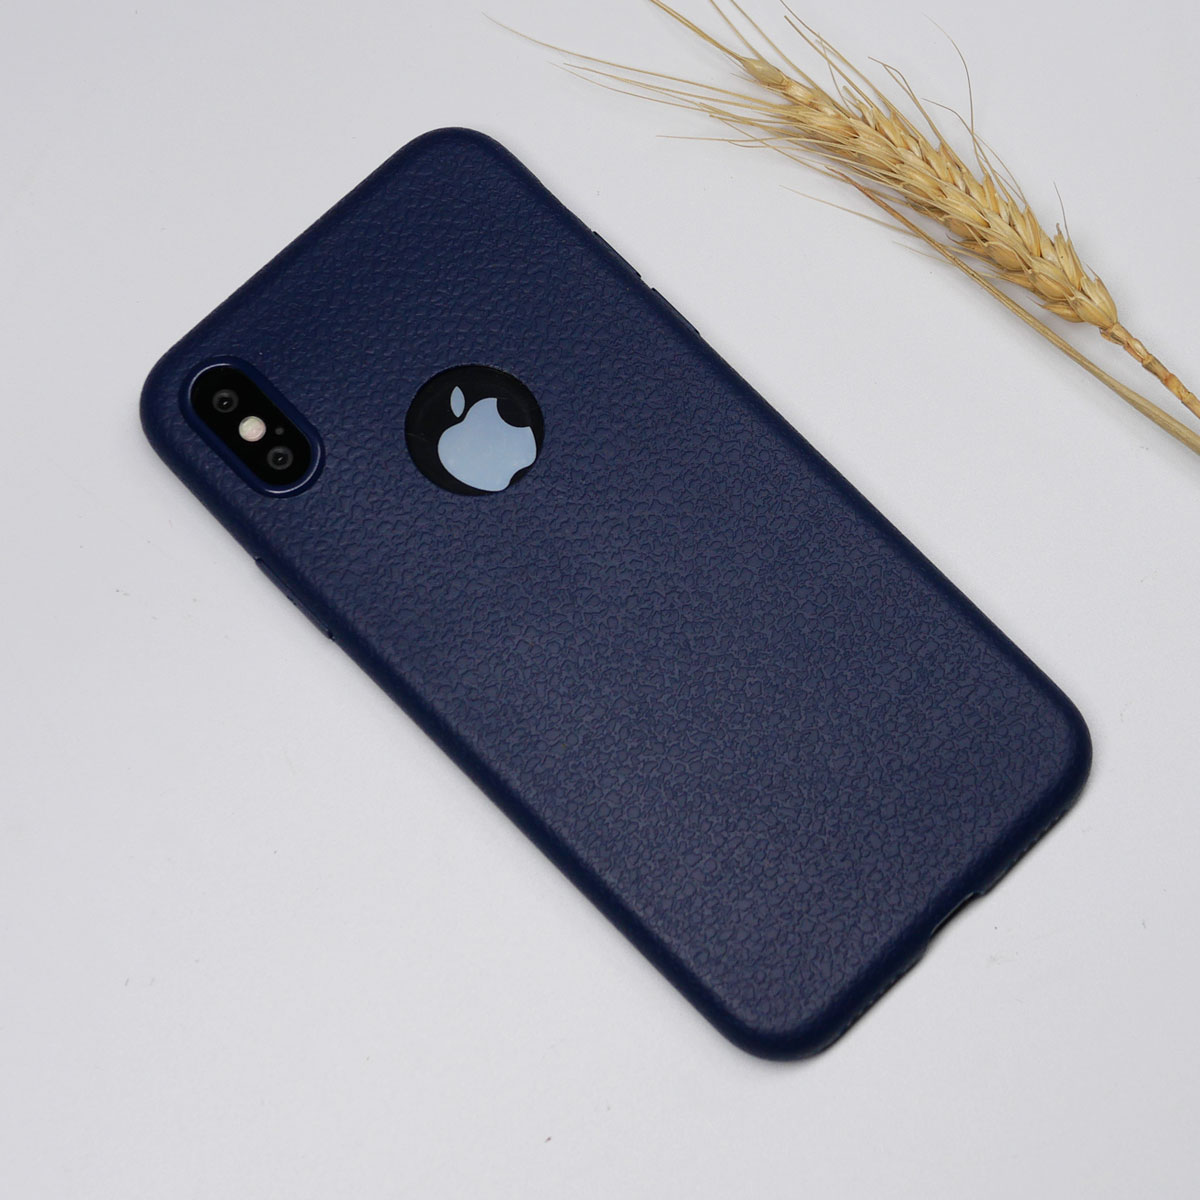 138101 เคส iPhone XS สีน้ำเงิน
